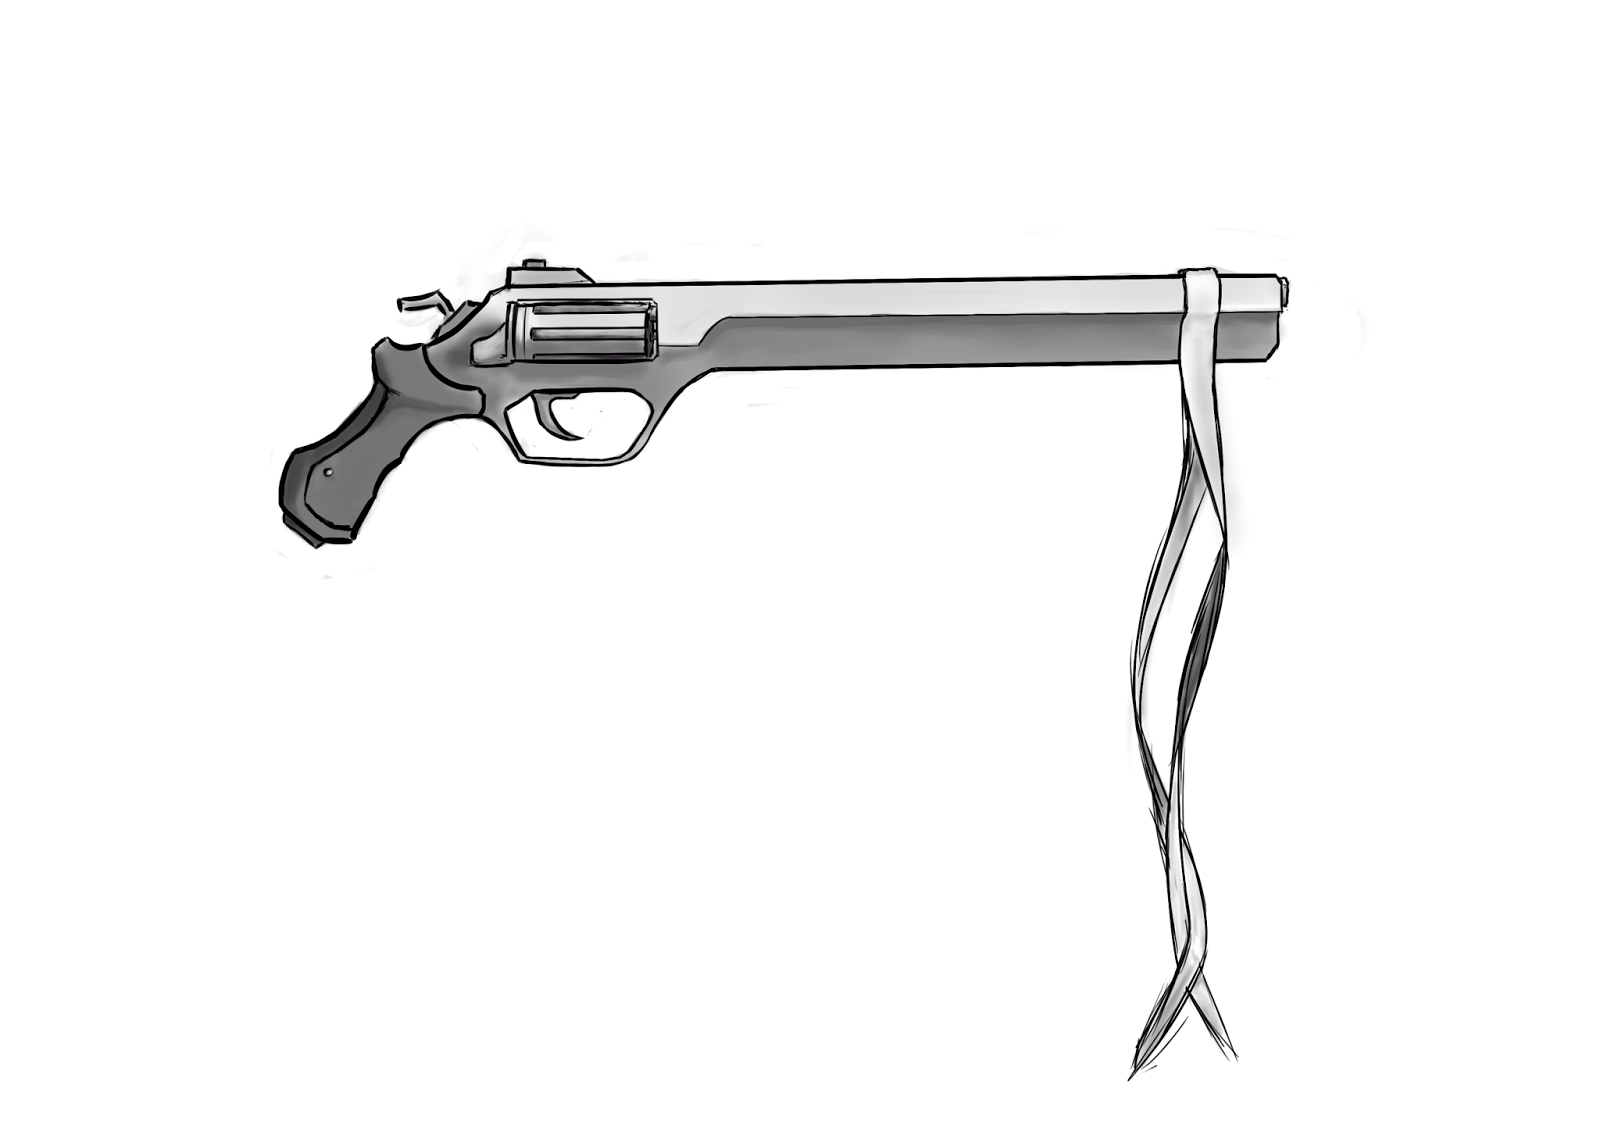 Револьвер миллера